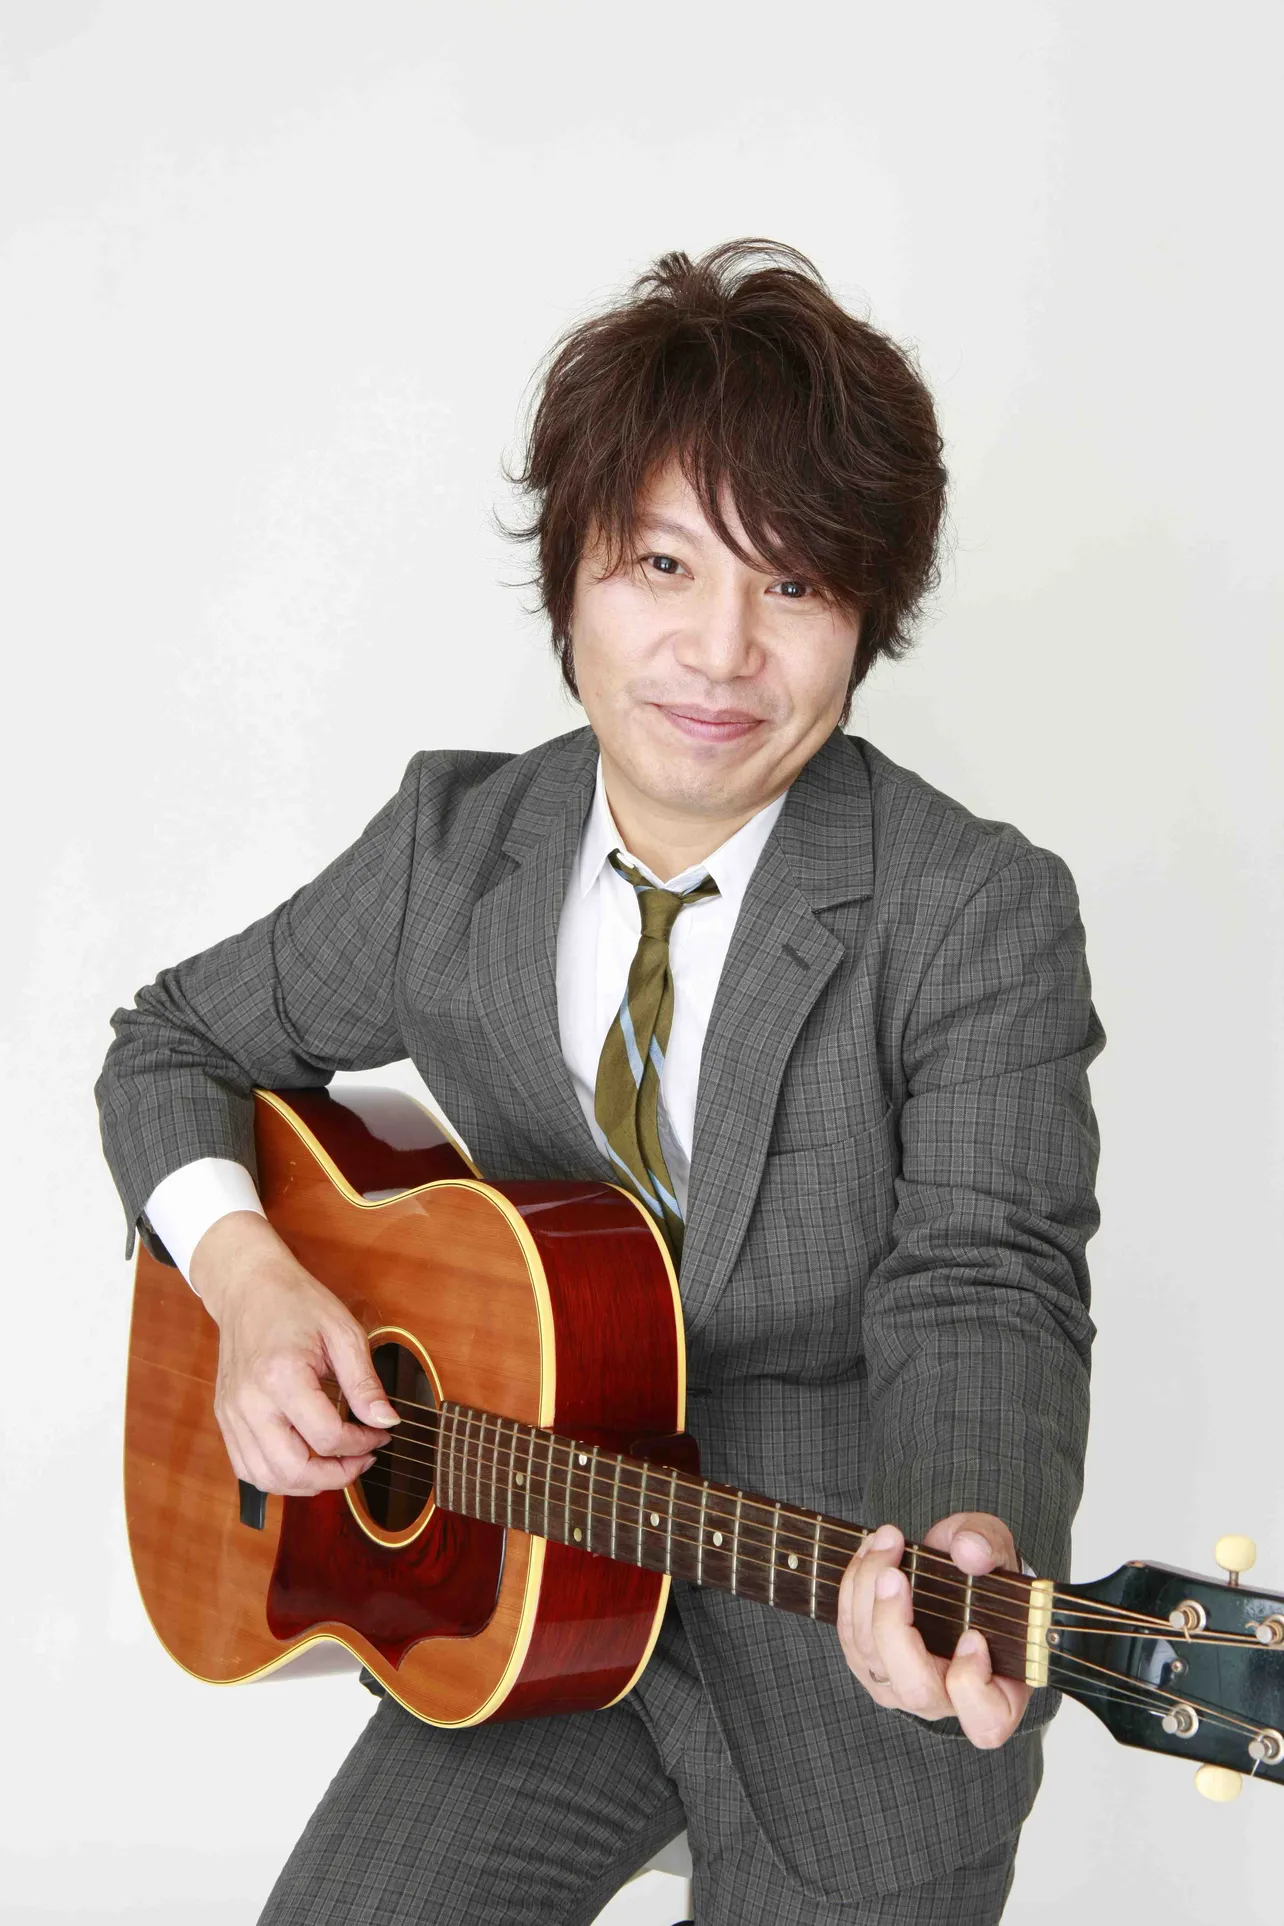 「日比谷音楽祭」で亀田誠治率いるバンド“The Music Park Orchestra”のメンバーとして参加予定の佐橋佳幸